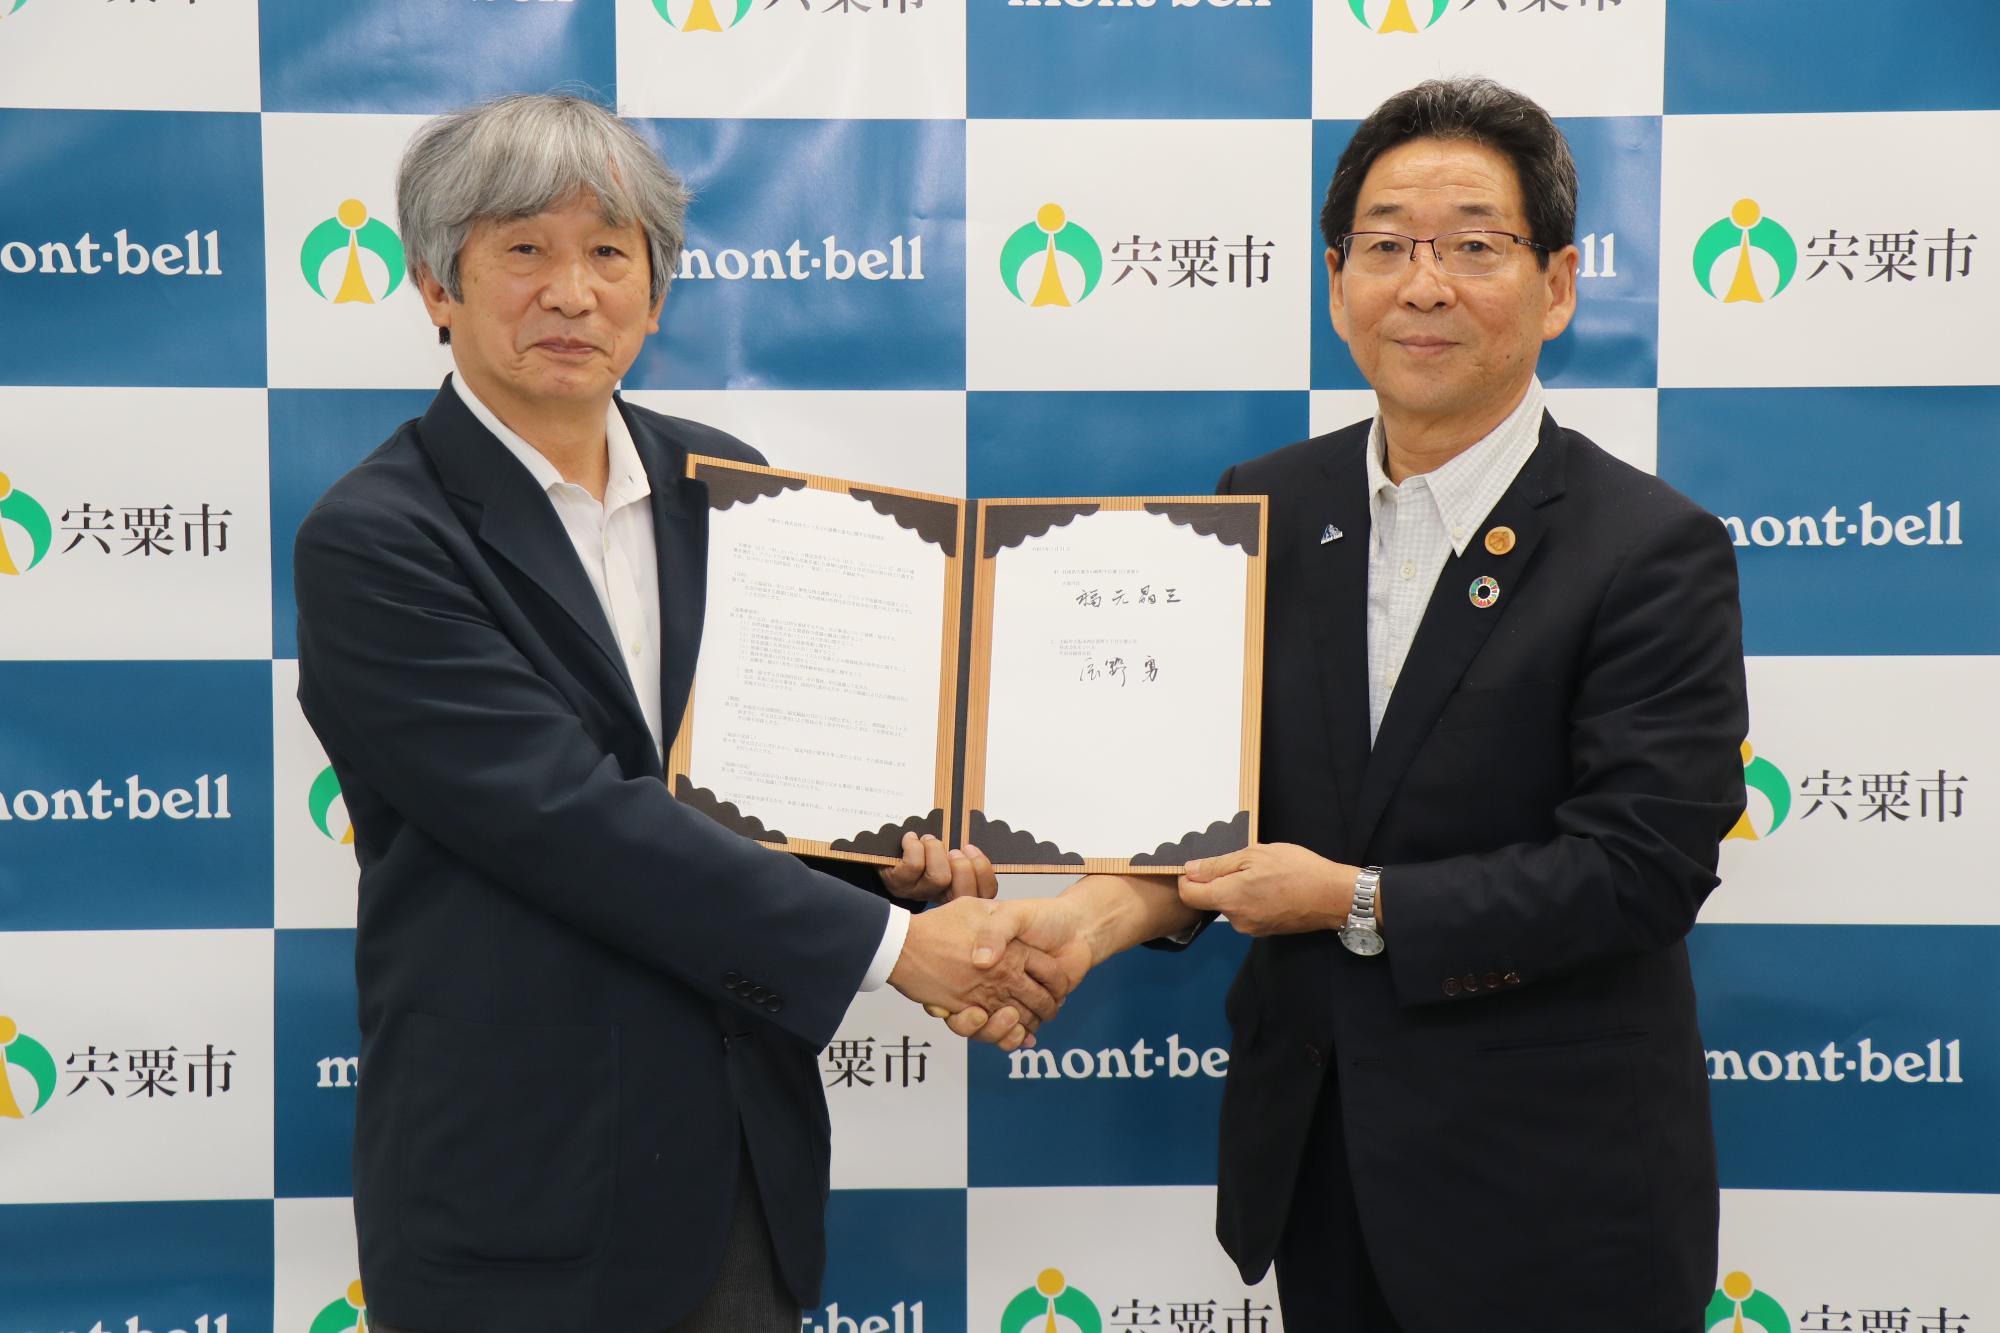 協定書を手に株式会社モンベル辰野会長と握手を交わす市長の写真